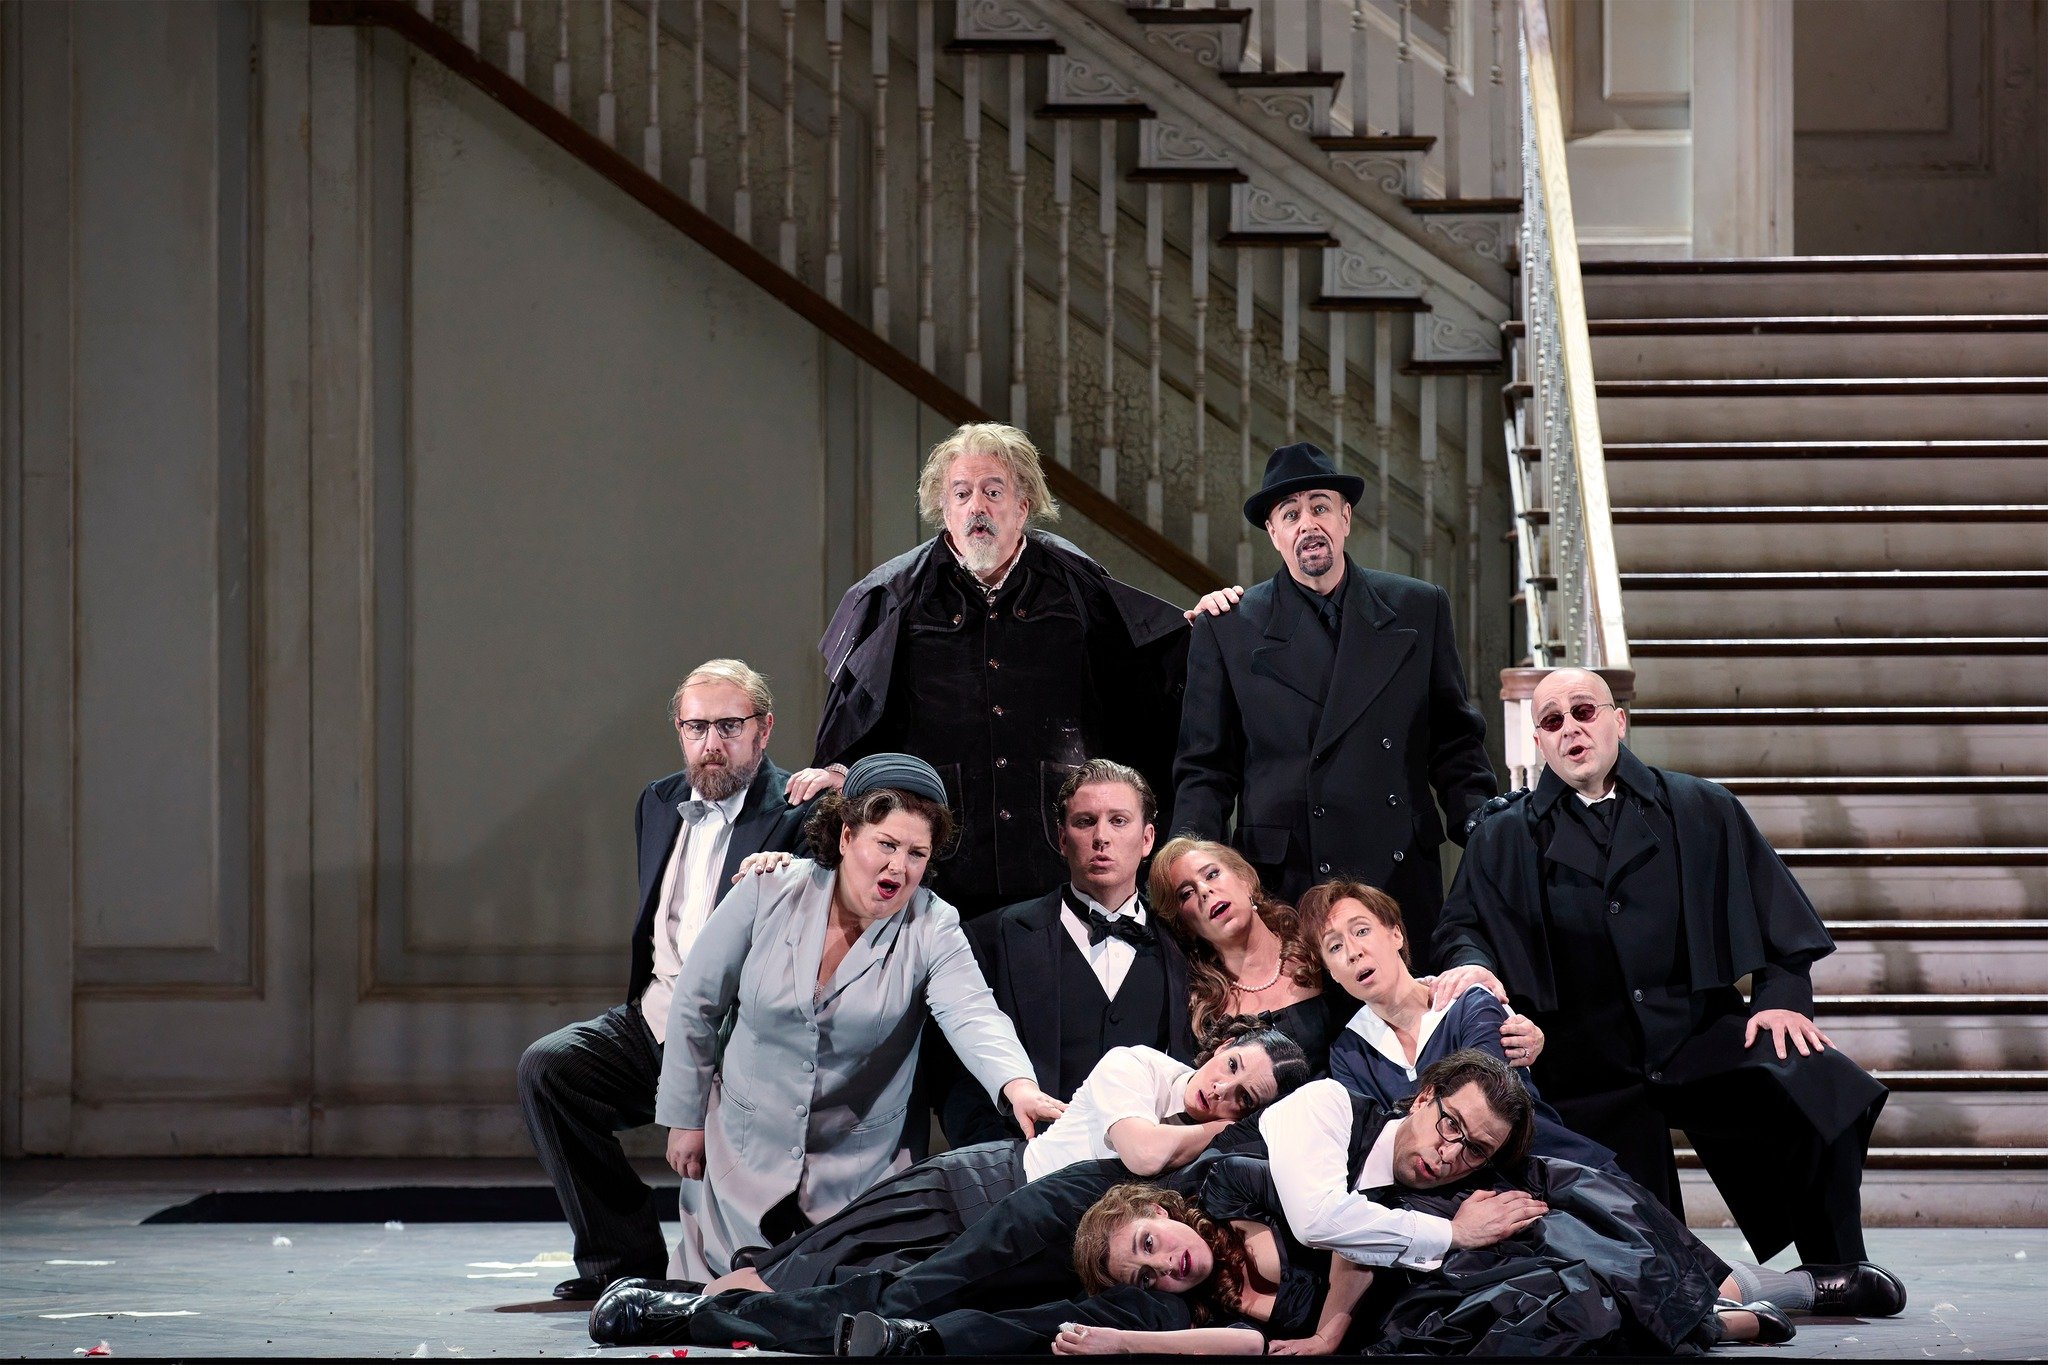  Le nozze di Figaro (Canadian Opera Company, 2023). 